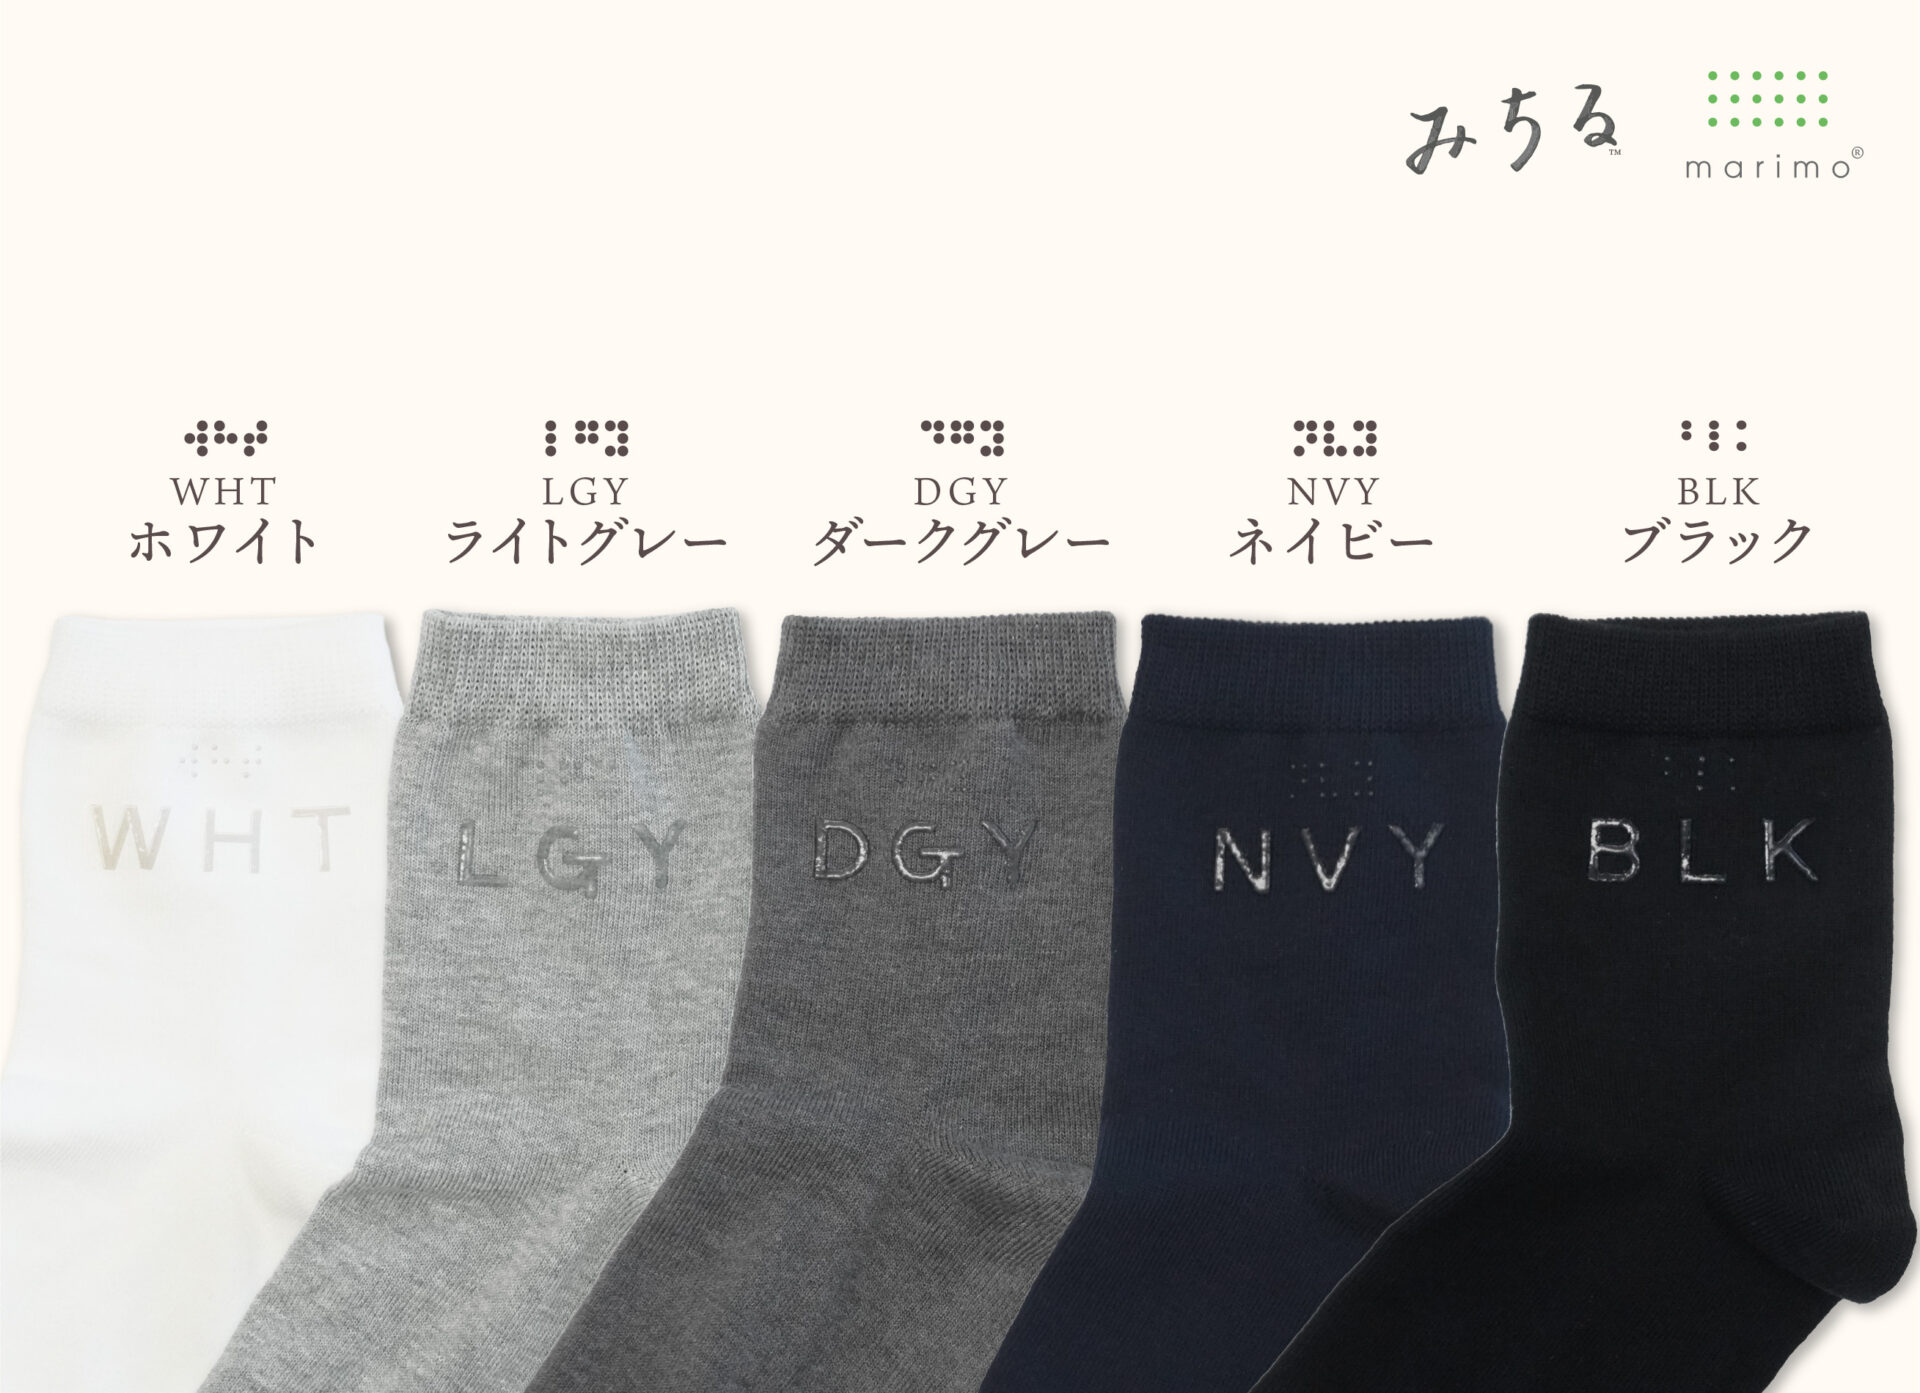 靴下が５そく並べられた写真。左からホワイト（WHT）、ライトグレー（LGY）、ダークグレー（DGY）、ネイビー（NVY）、ブラック（BLK）。たとえばホワイトの場合、アルファベット大文字でダブリュー、エイチ、ティーが透明の凹凸で模様のように書かれたうえに、点字がハイっています。